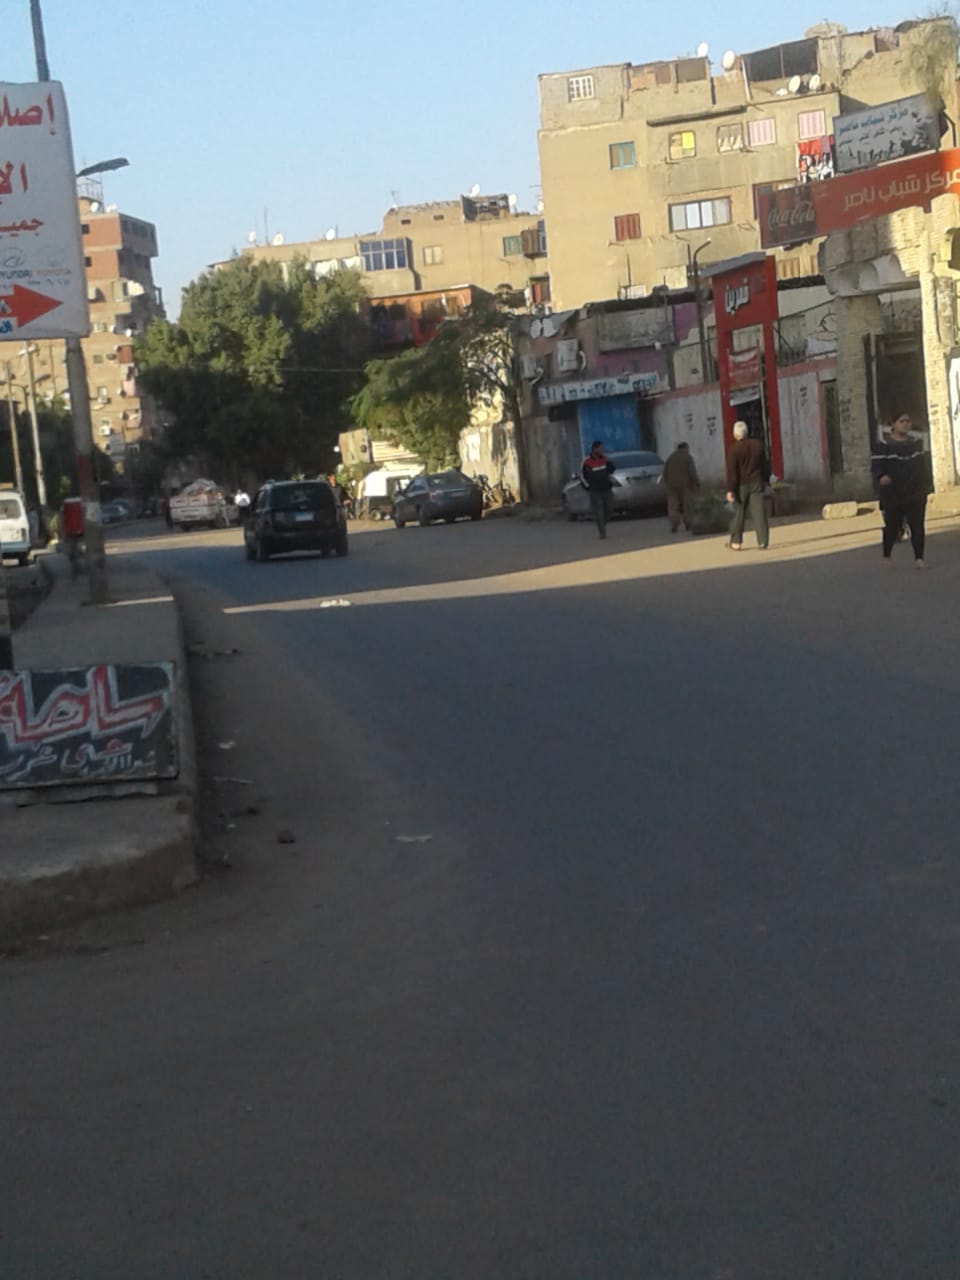 شارع كريستال عصفور بمدينة شبرا الخيمة (7)